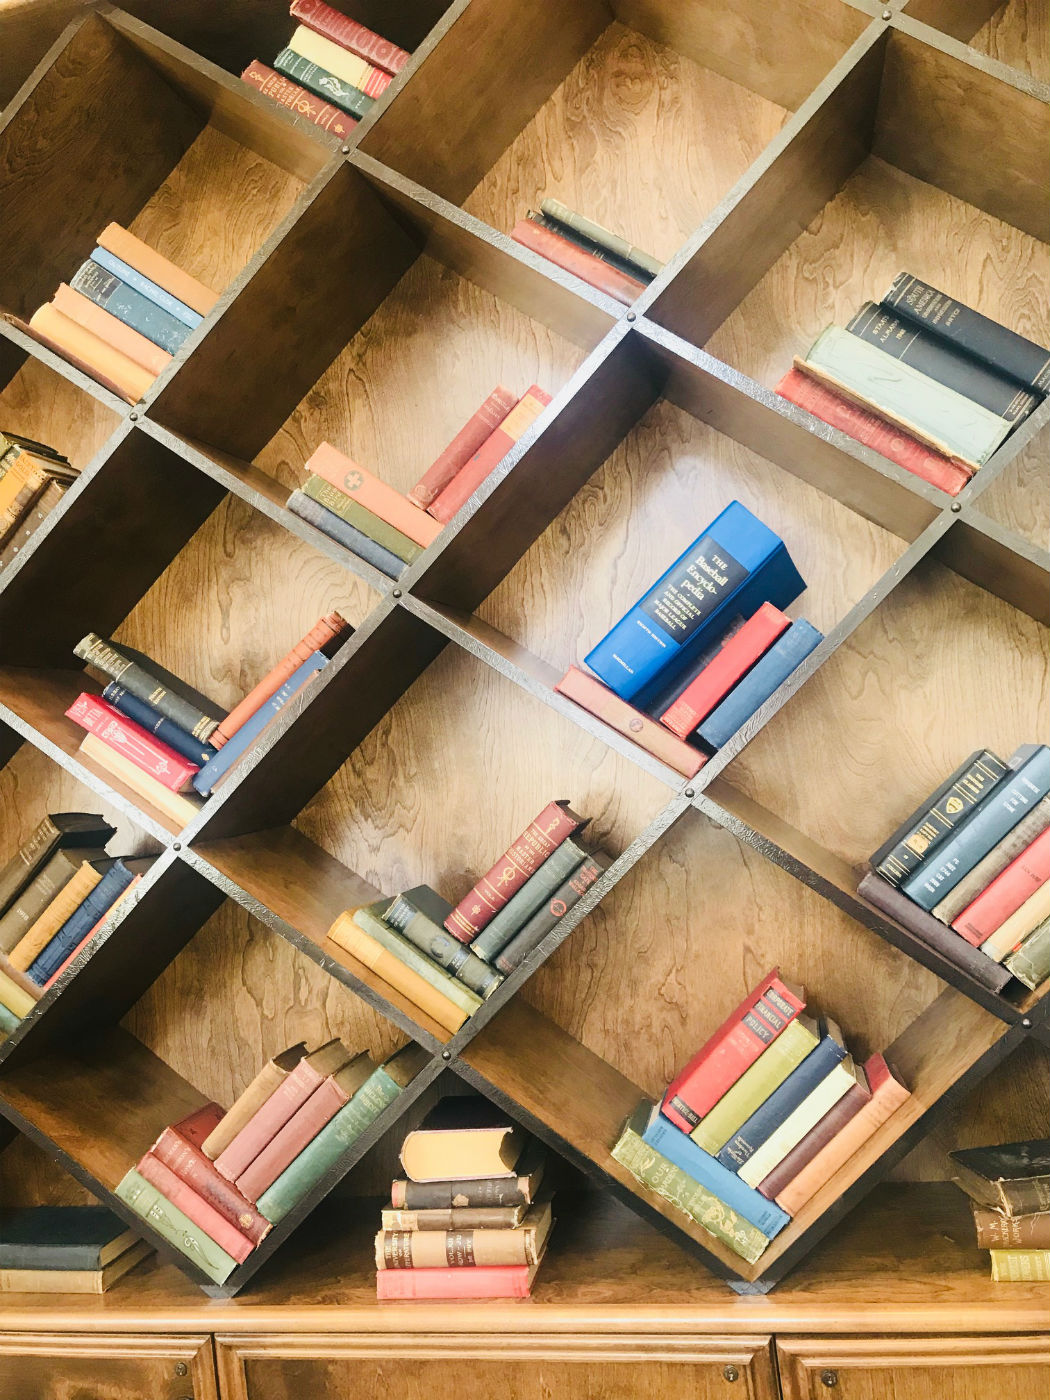 slanted bookshelf with gaps